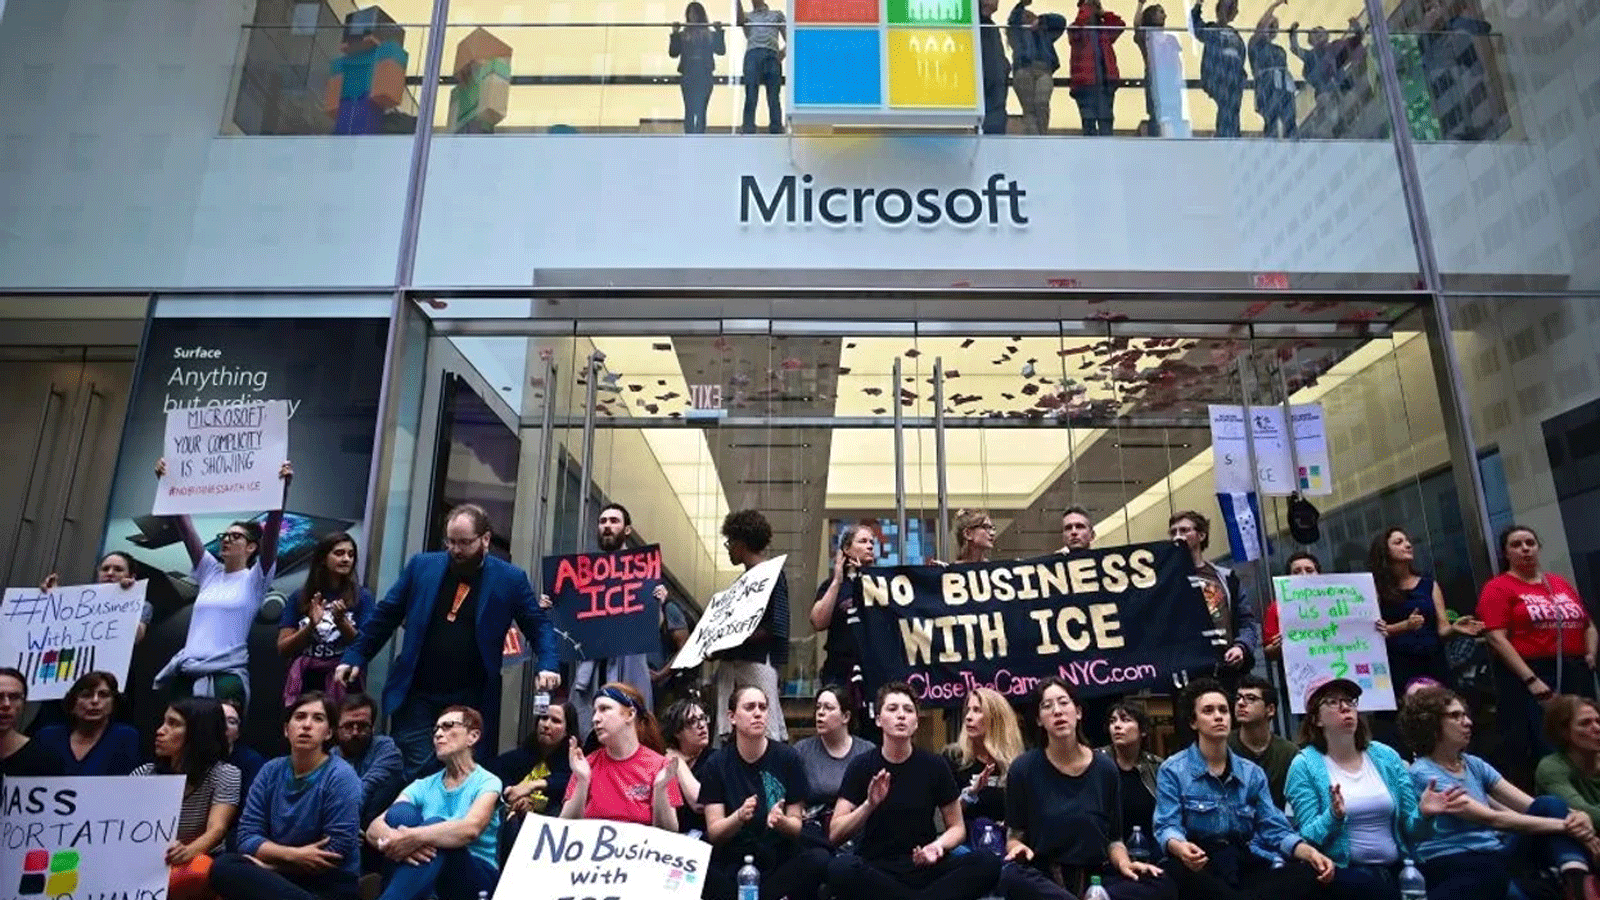 صورة أرشيفية لموظفين يتظاهرون في متجر Microsoft في وسط مانهاتن احتجاجًا على مشاركة الشركة مع شركة ICE في أيلول\سبتمبر 2019.